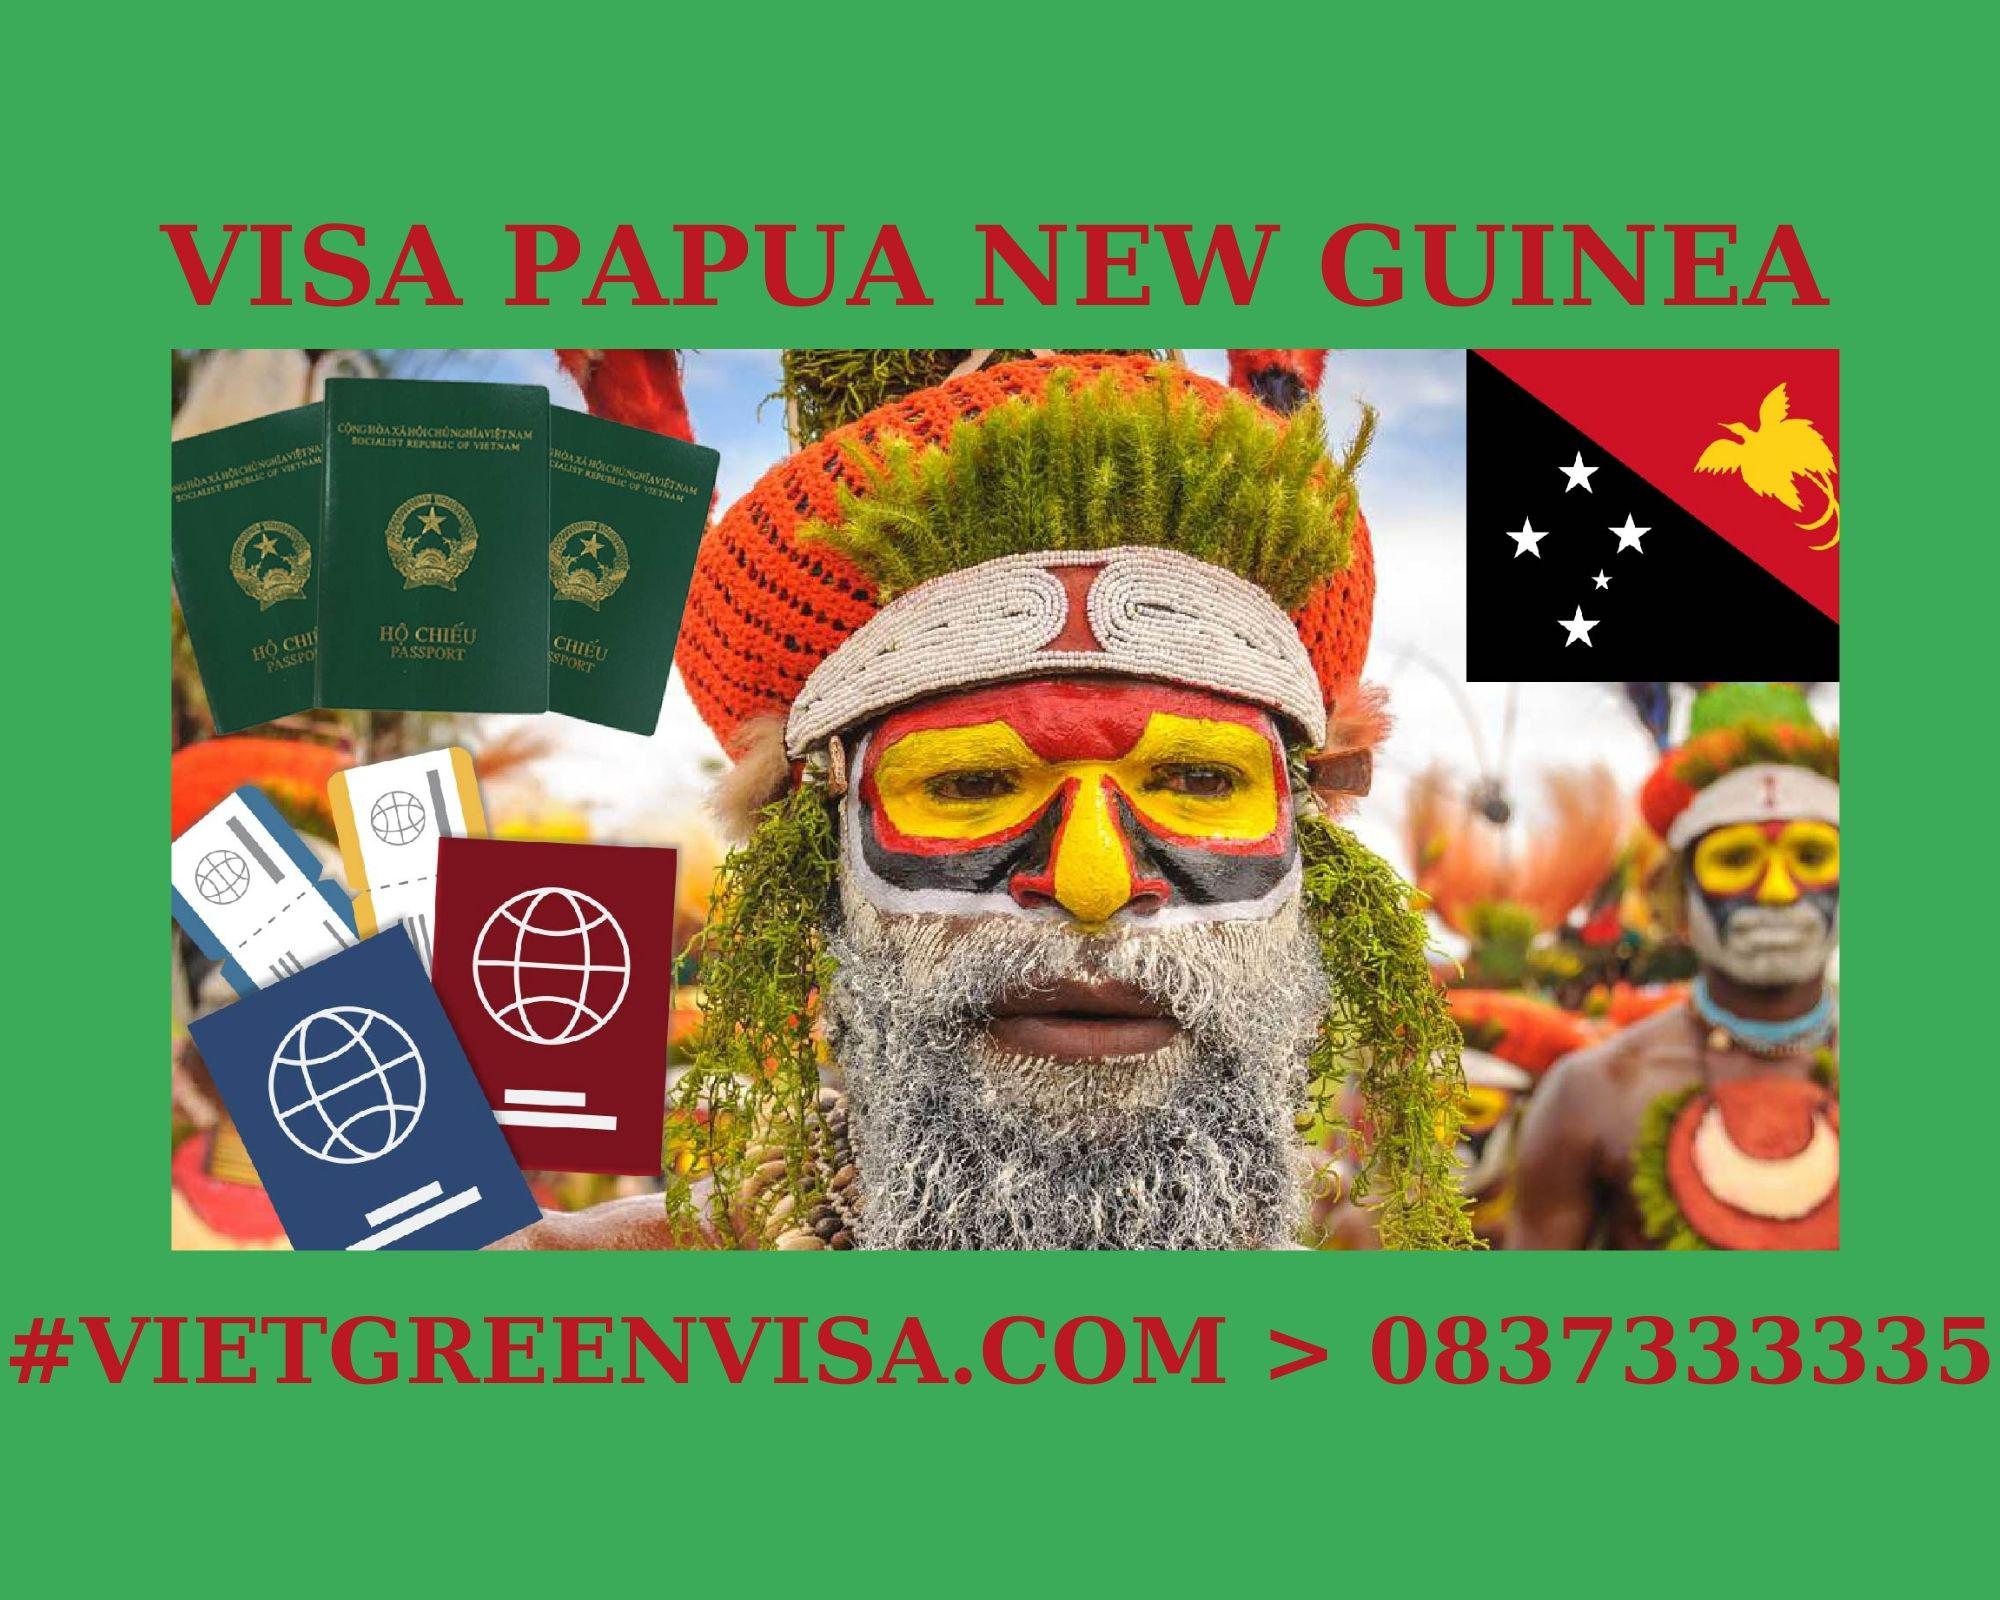 Làm Visa Papau New Guine thăm thân uy tín, nhanh chóng, giá rẻ